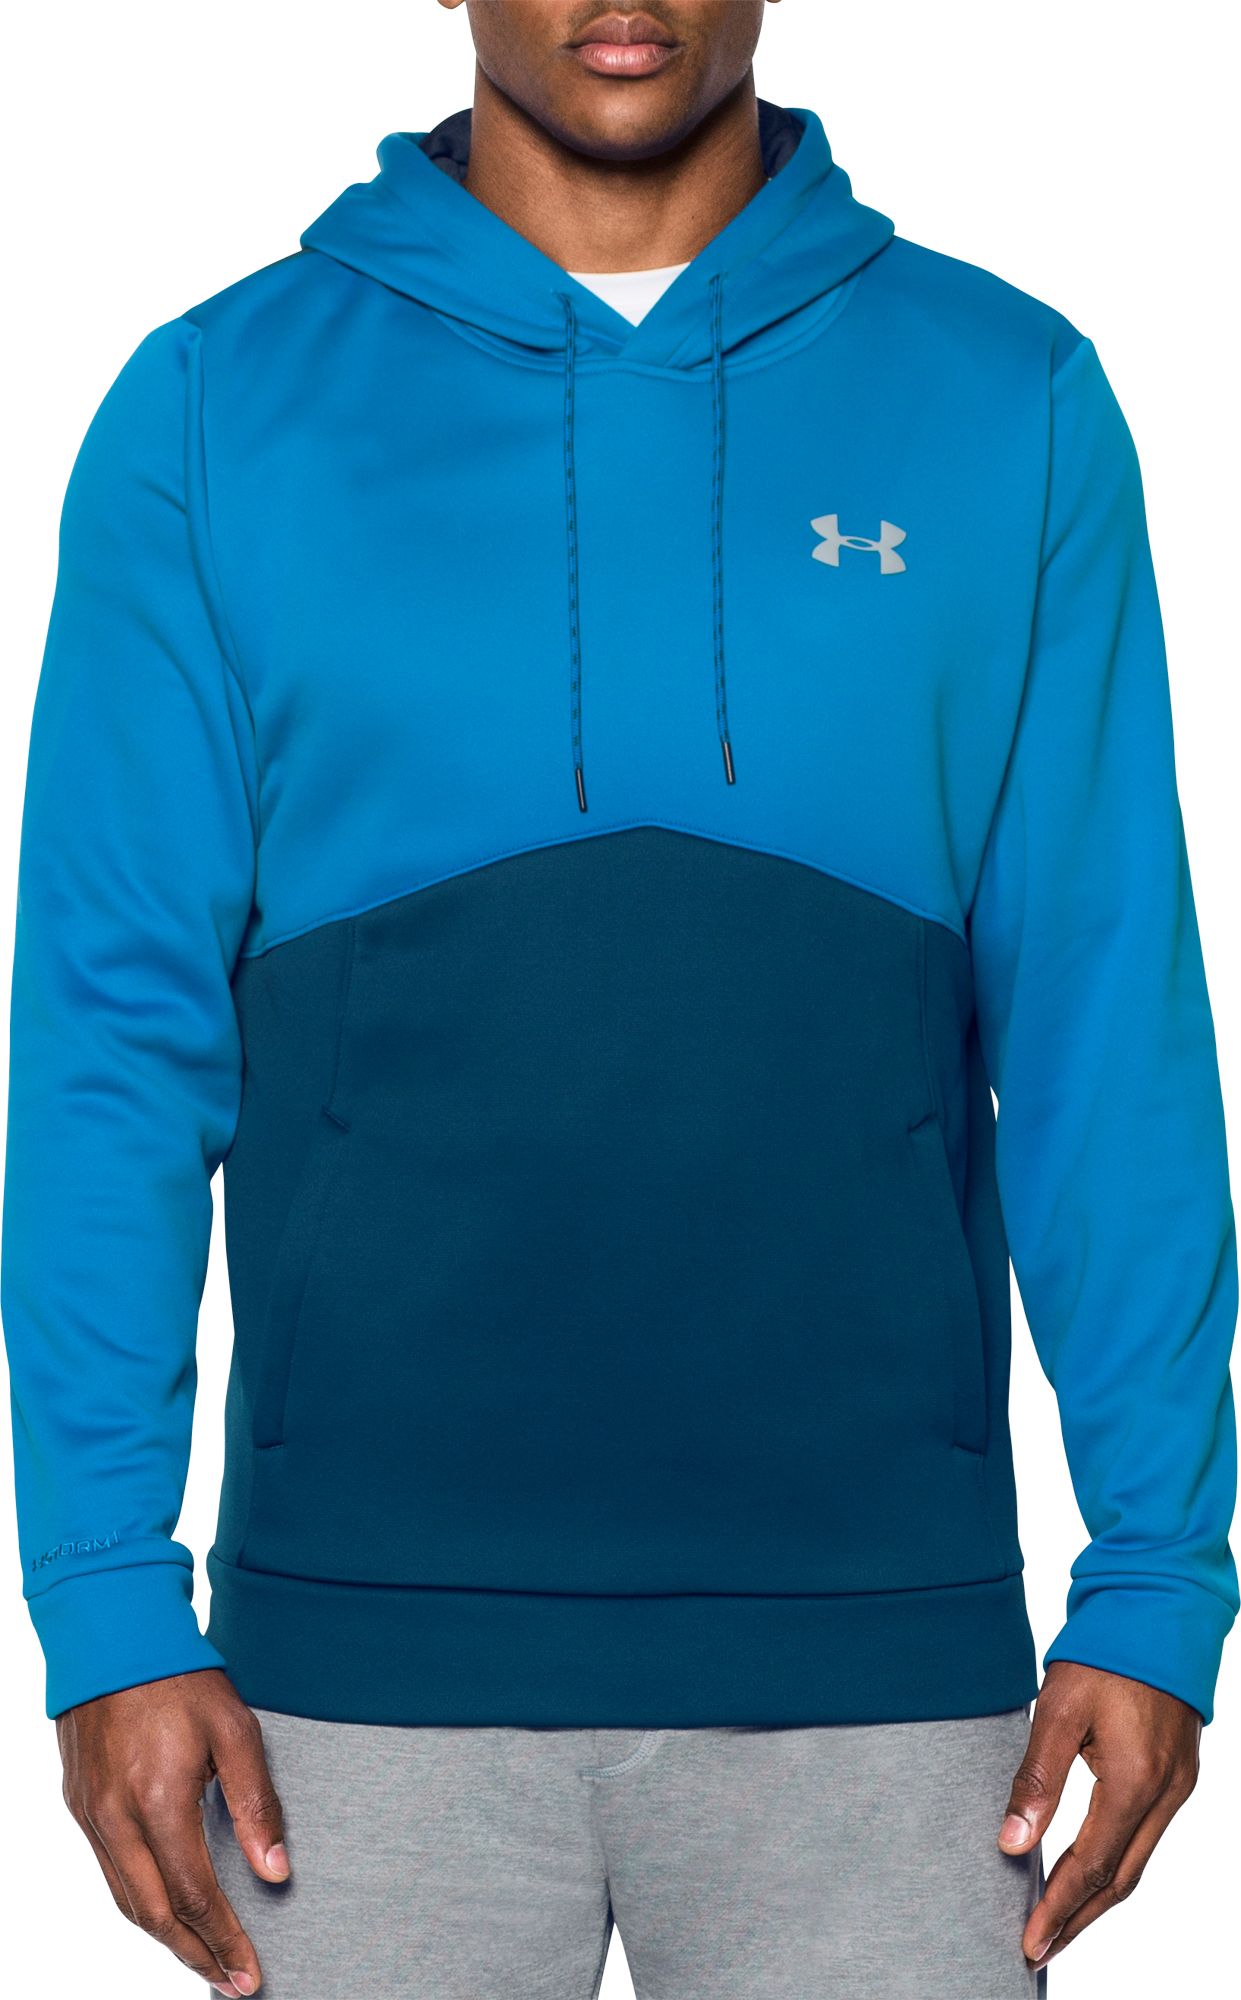 Men's Sweaters & Fleece | DICK'S Sporting Goods